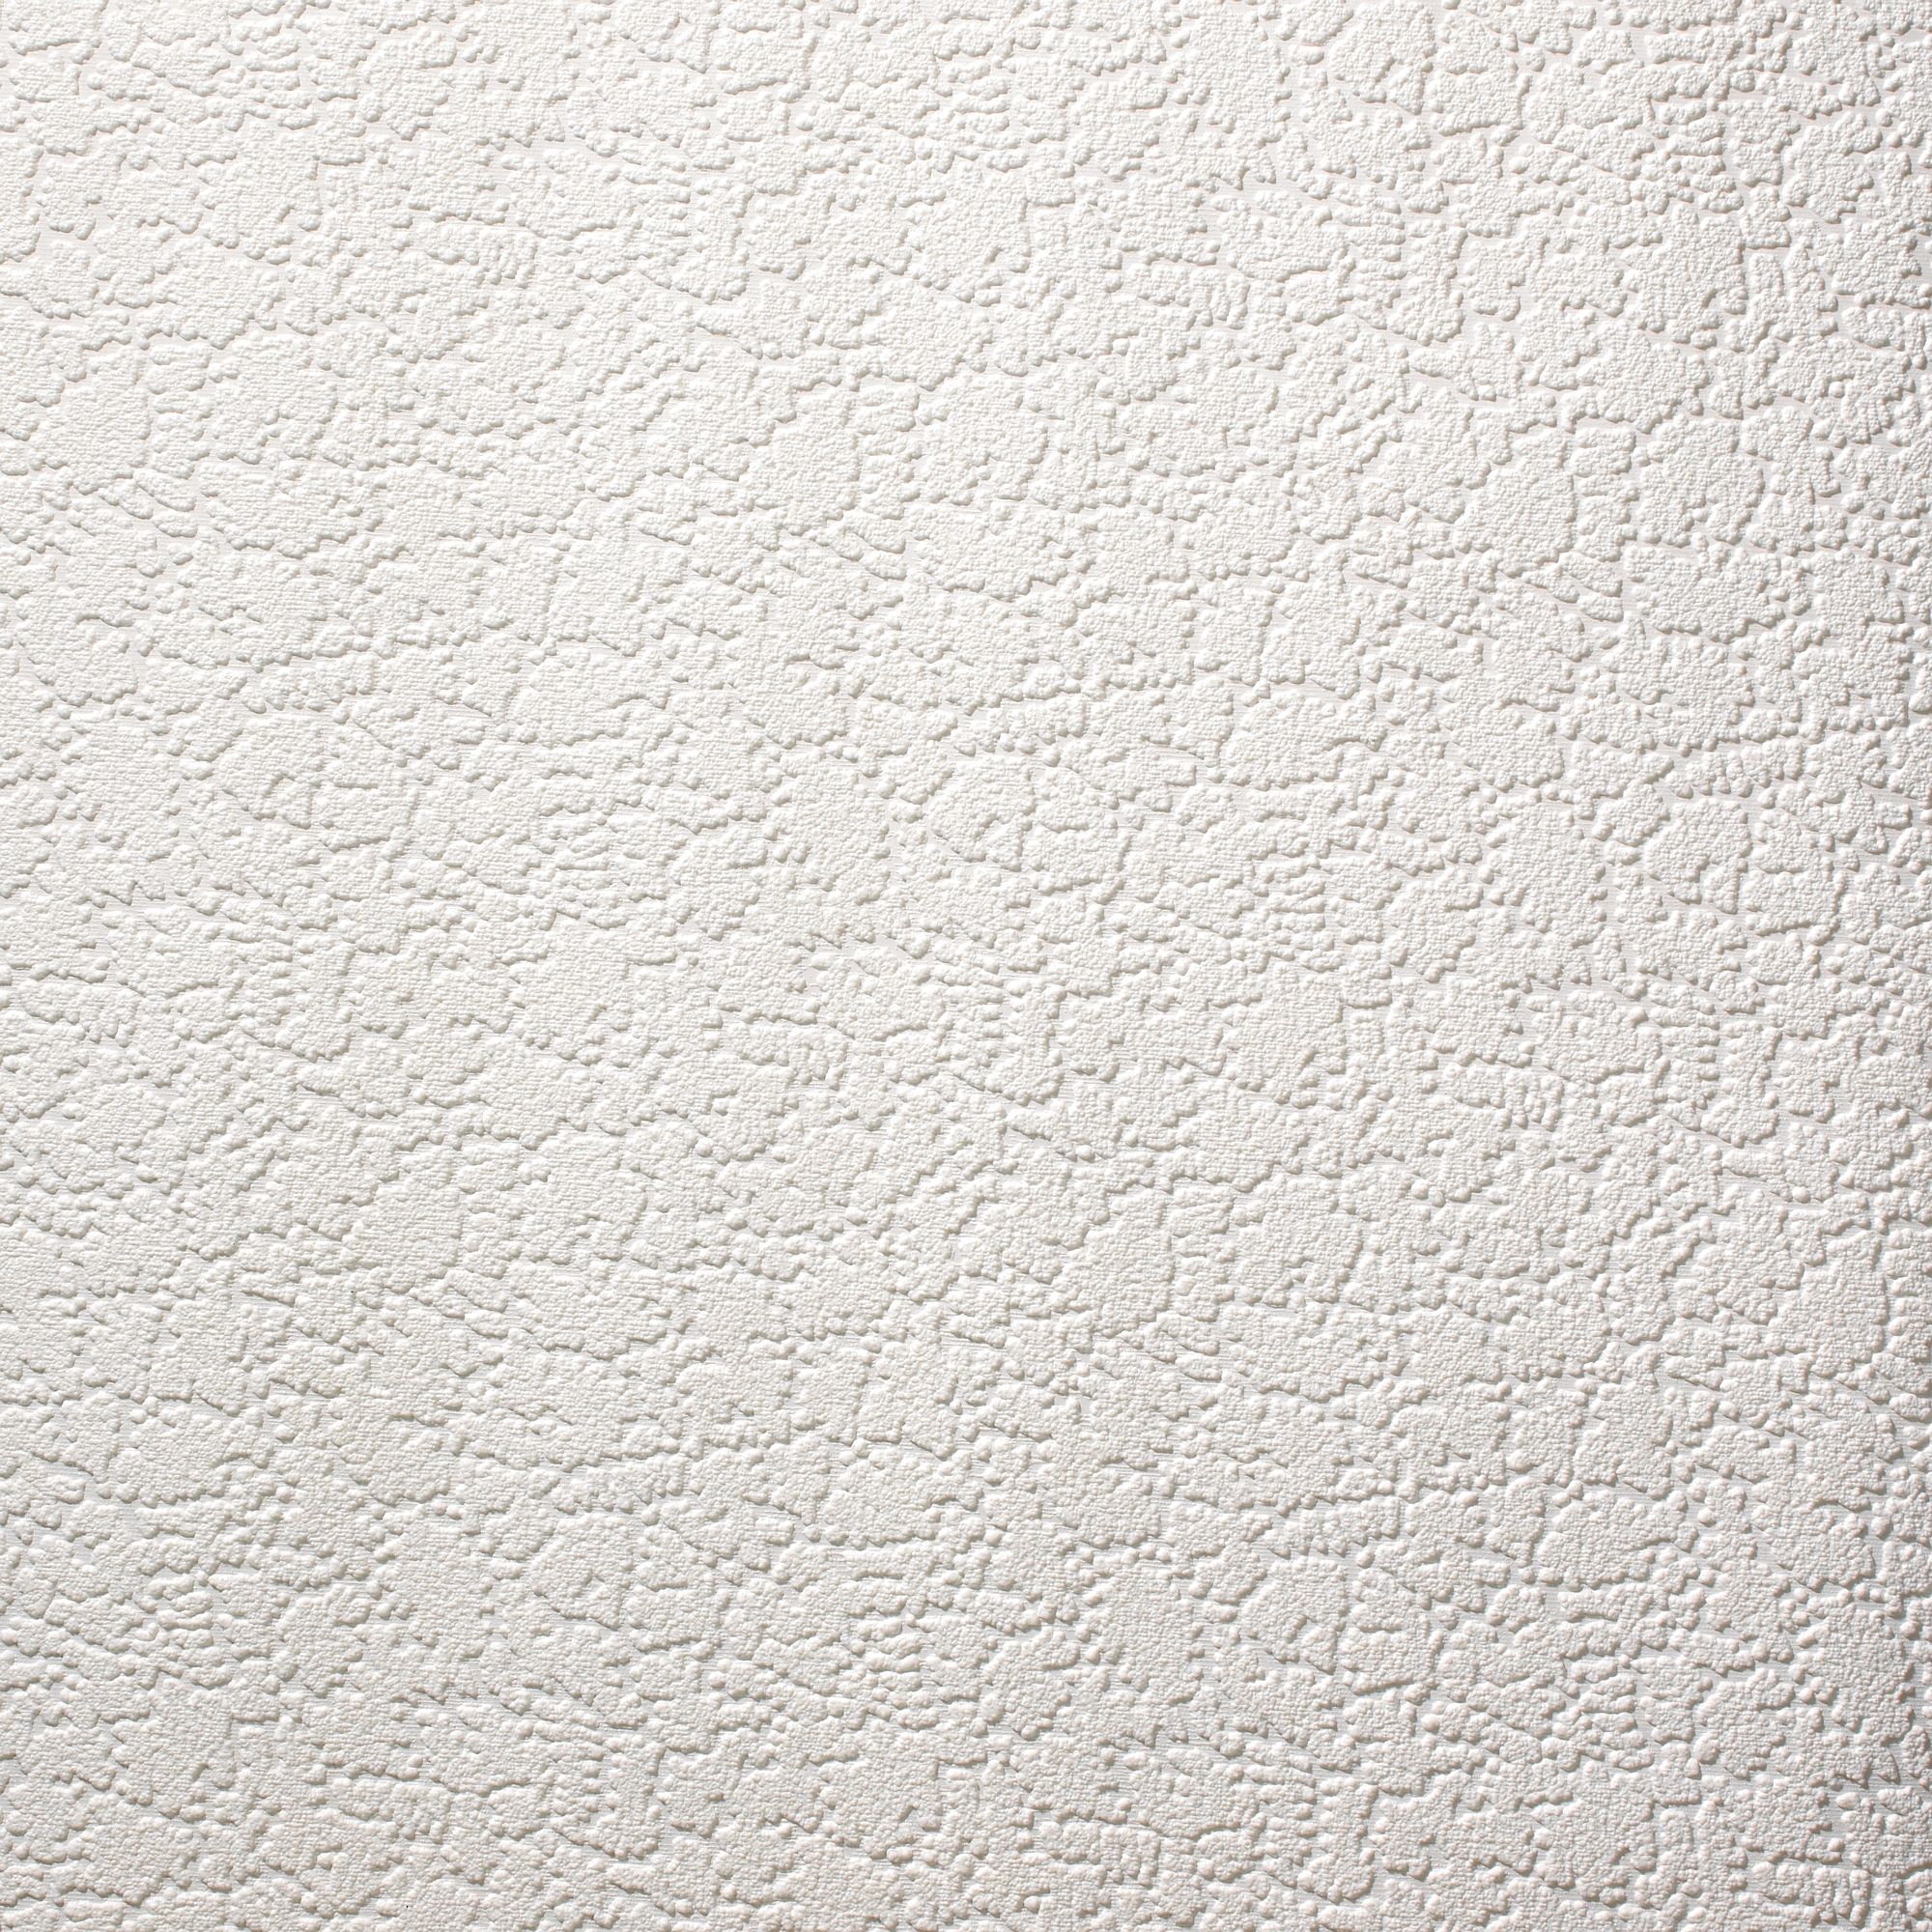 white textured wallpaper designs